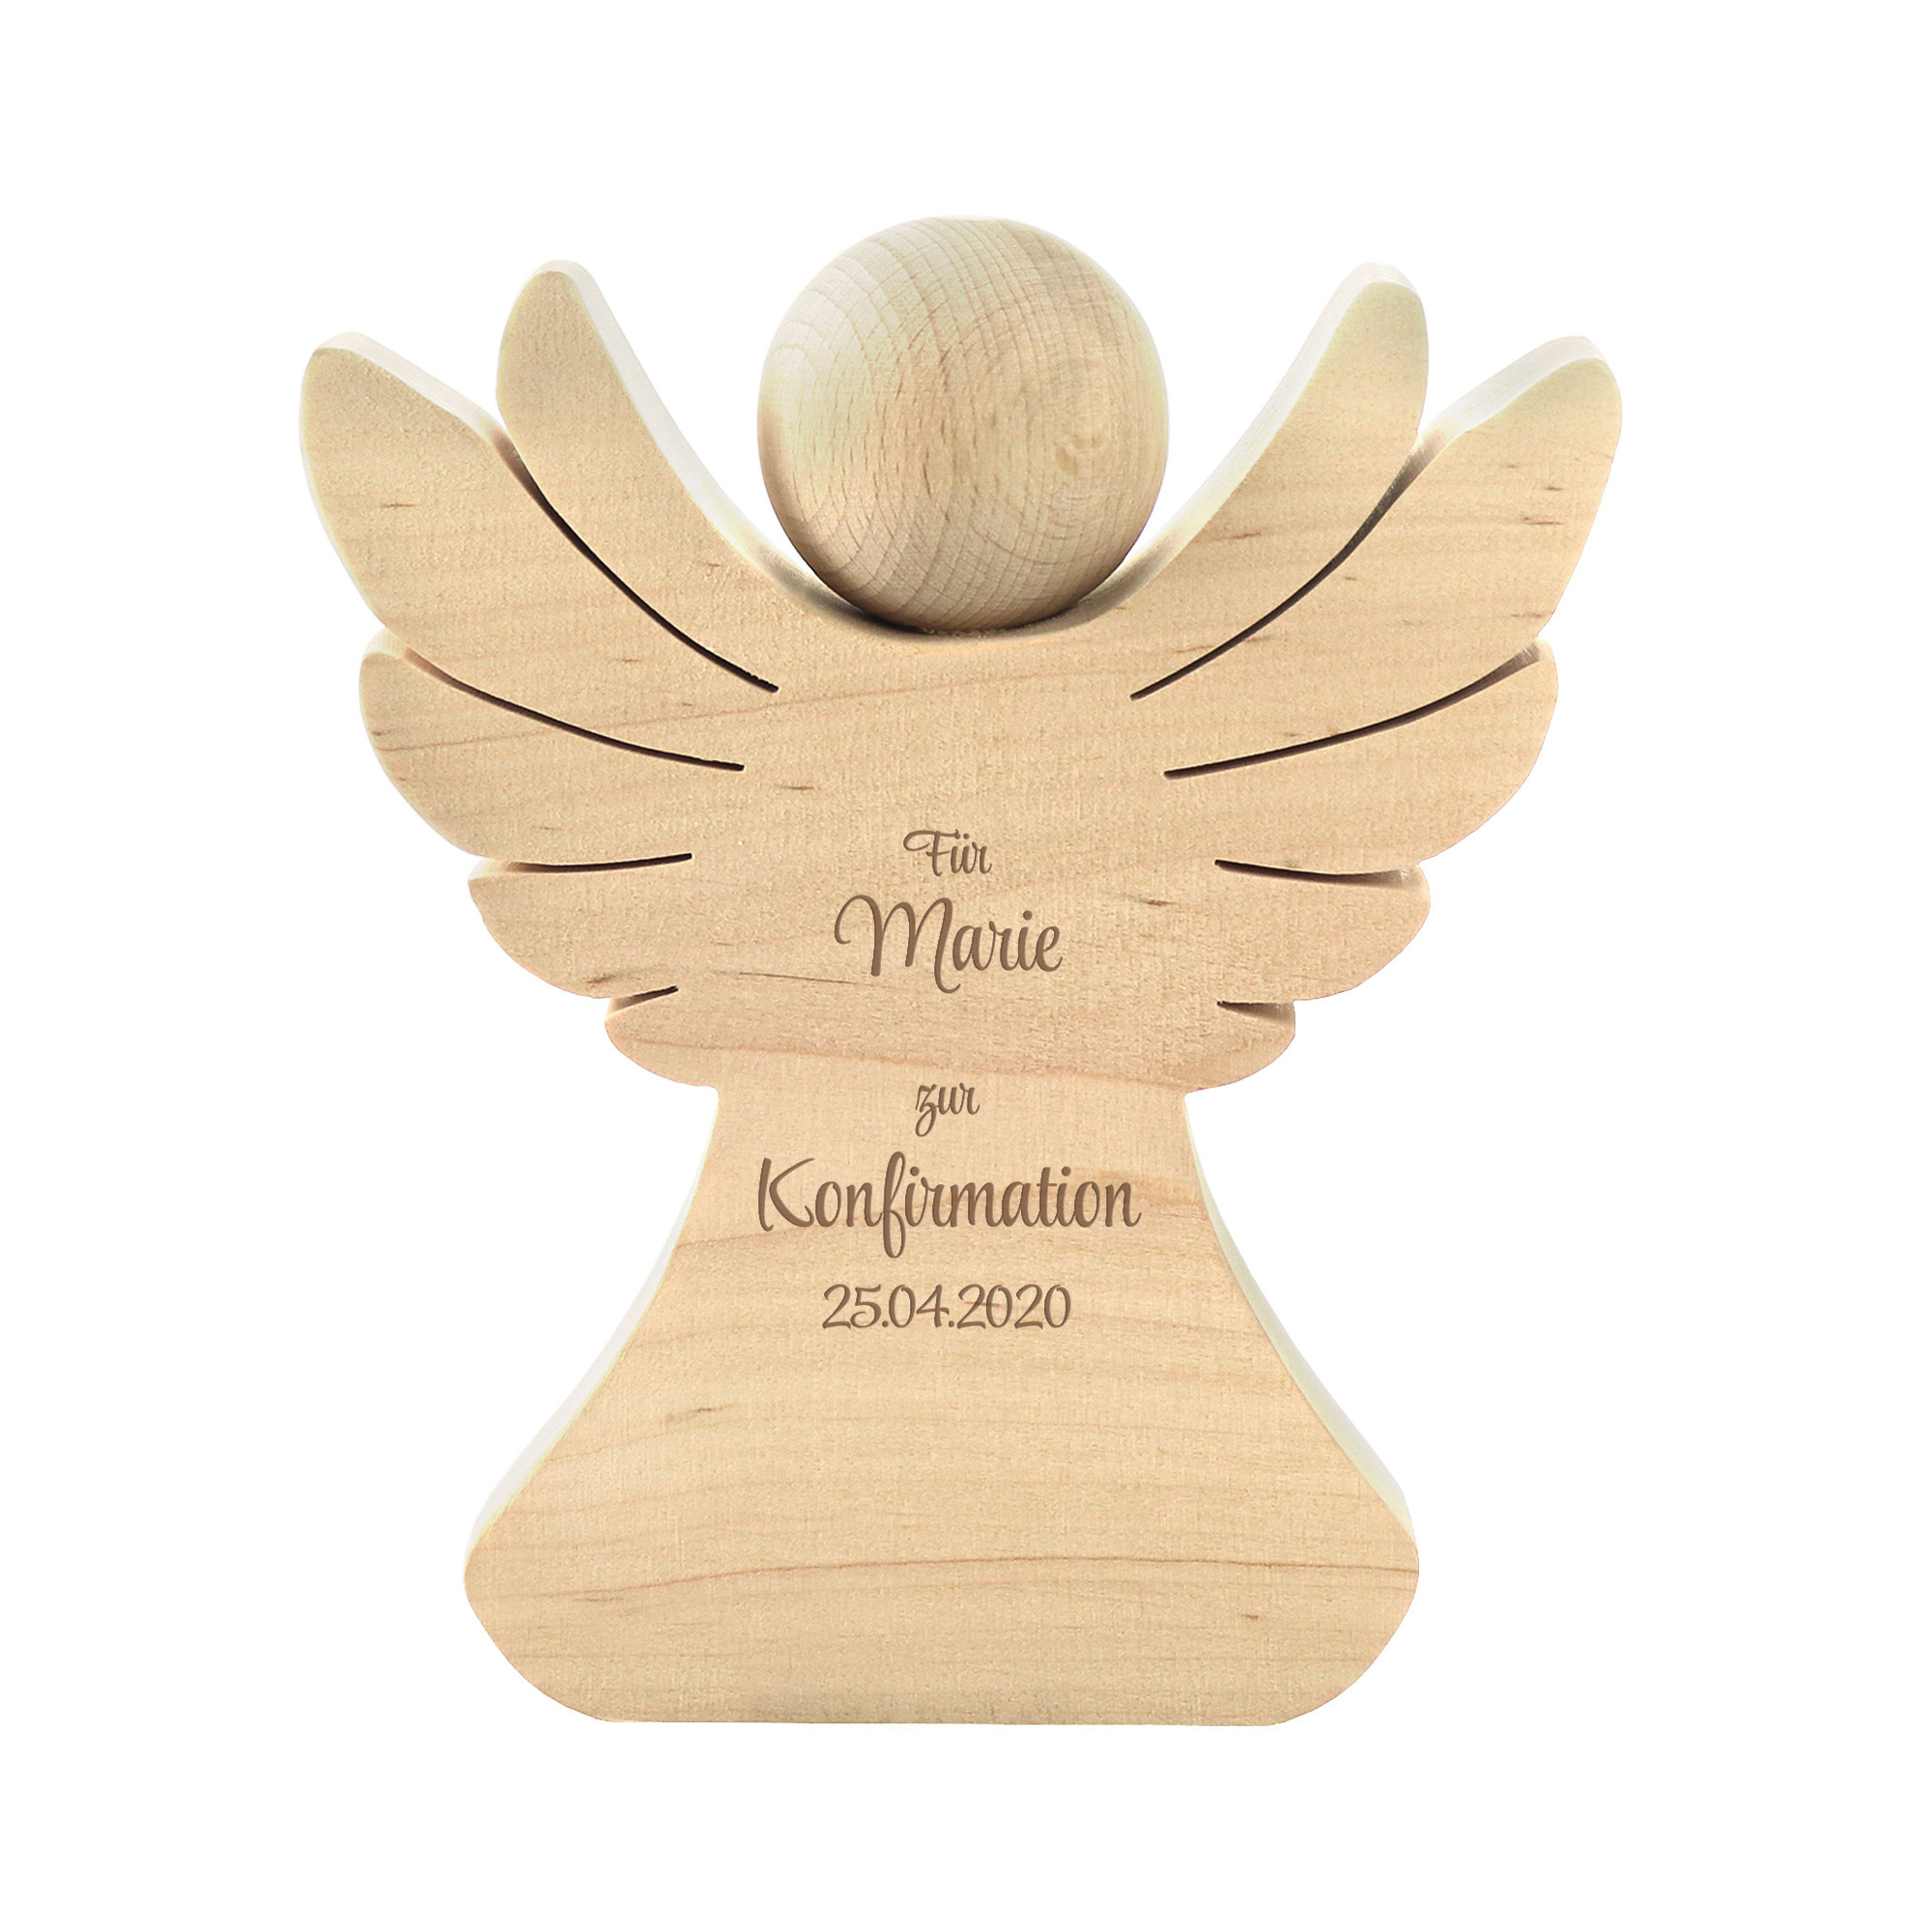 Engel aus Holz mit Gravur zur Konfirmation - Personalisiert